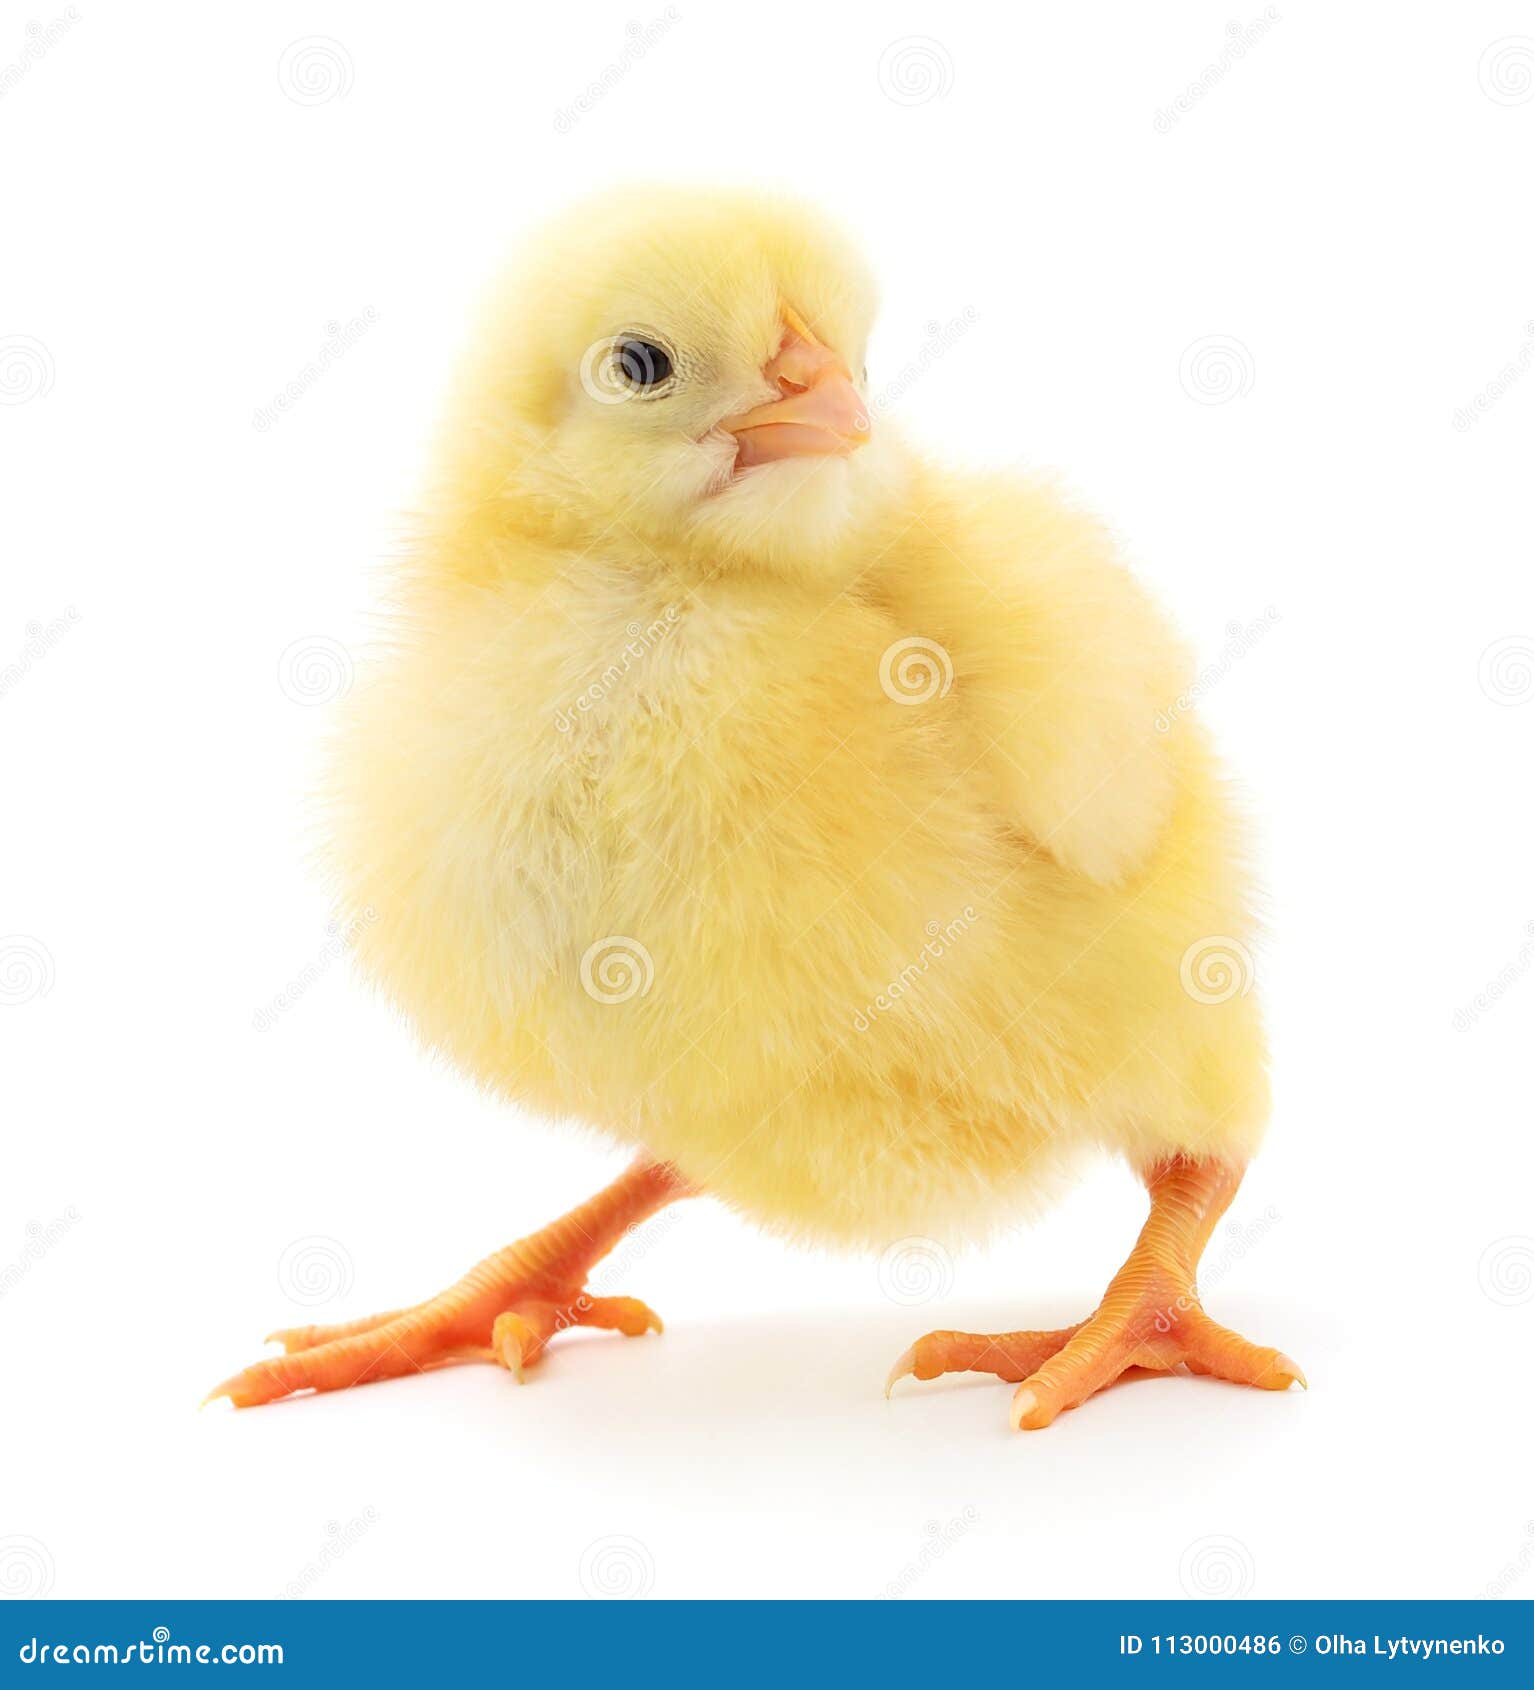 Pequeño pollo amarillo foto de archivo. Imagen de animal - 113000486